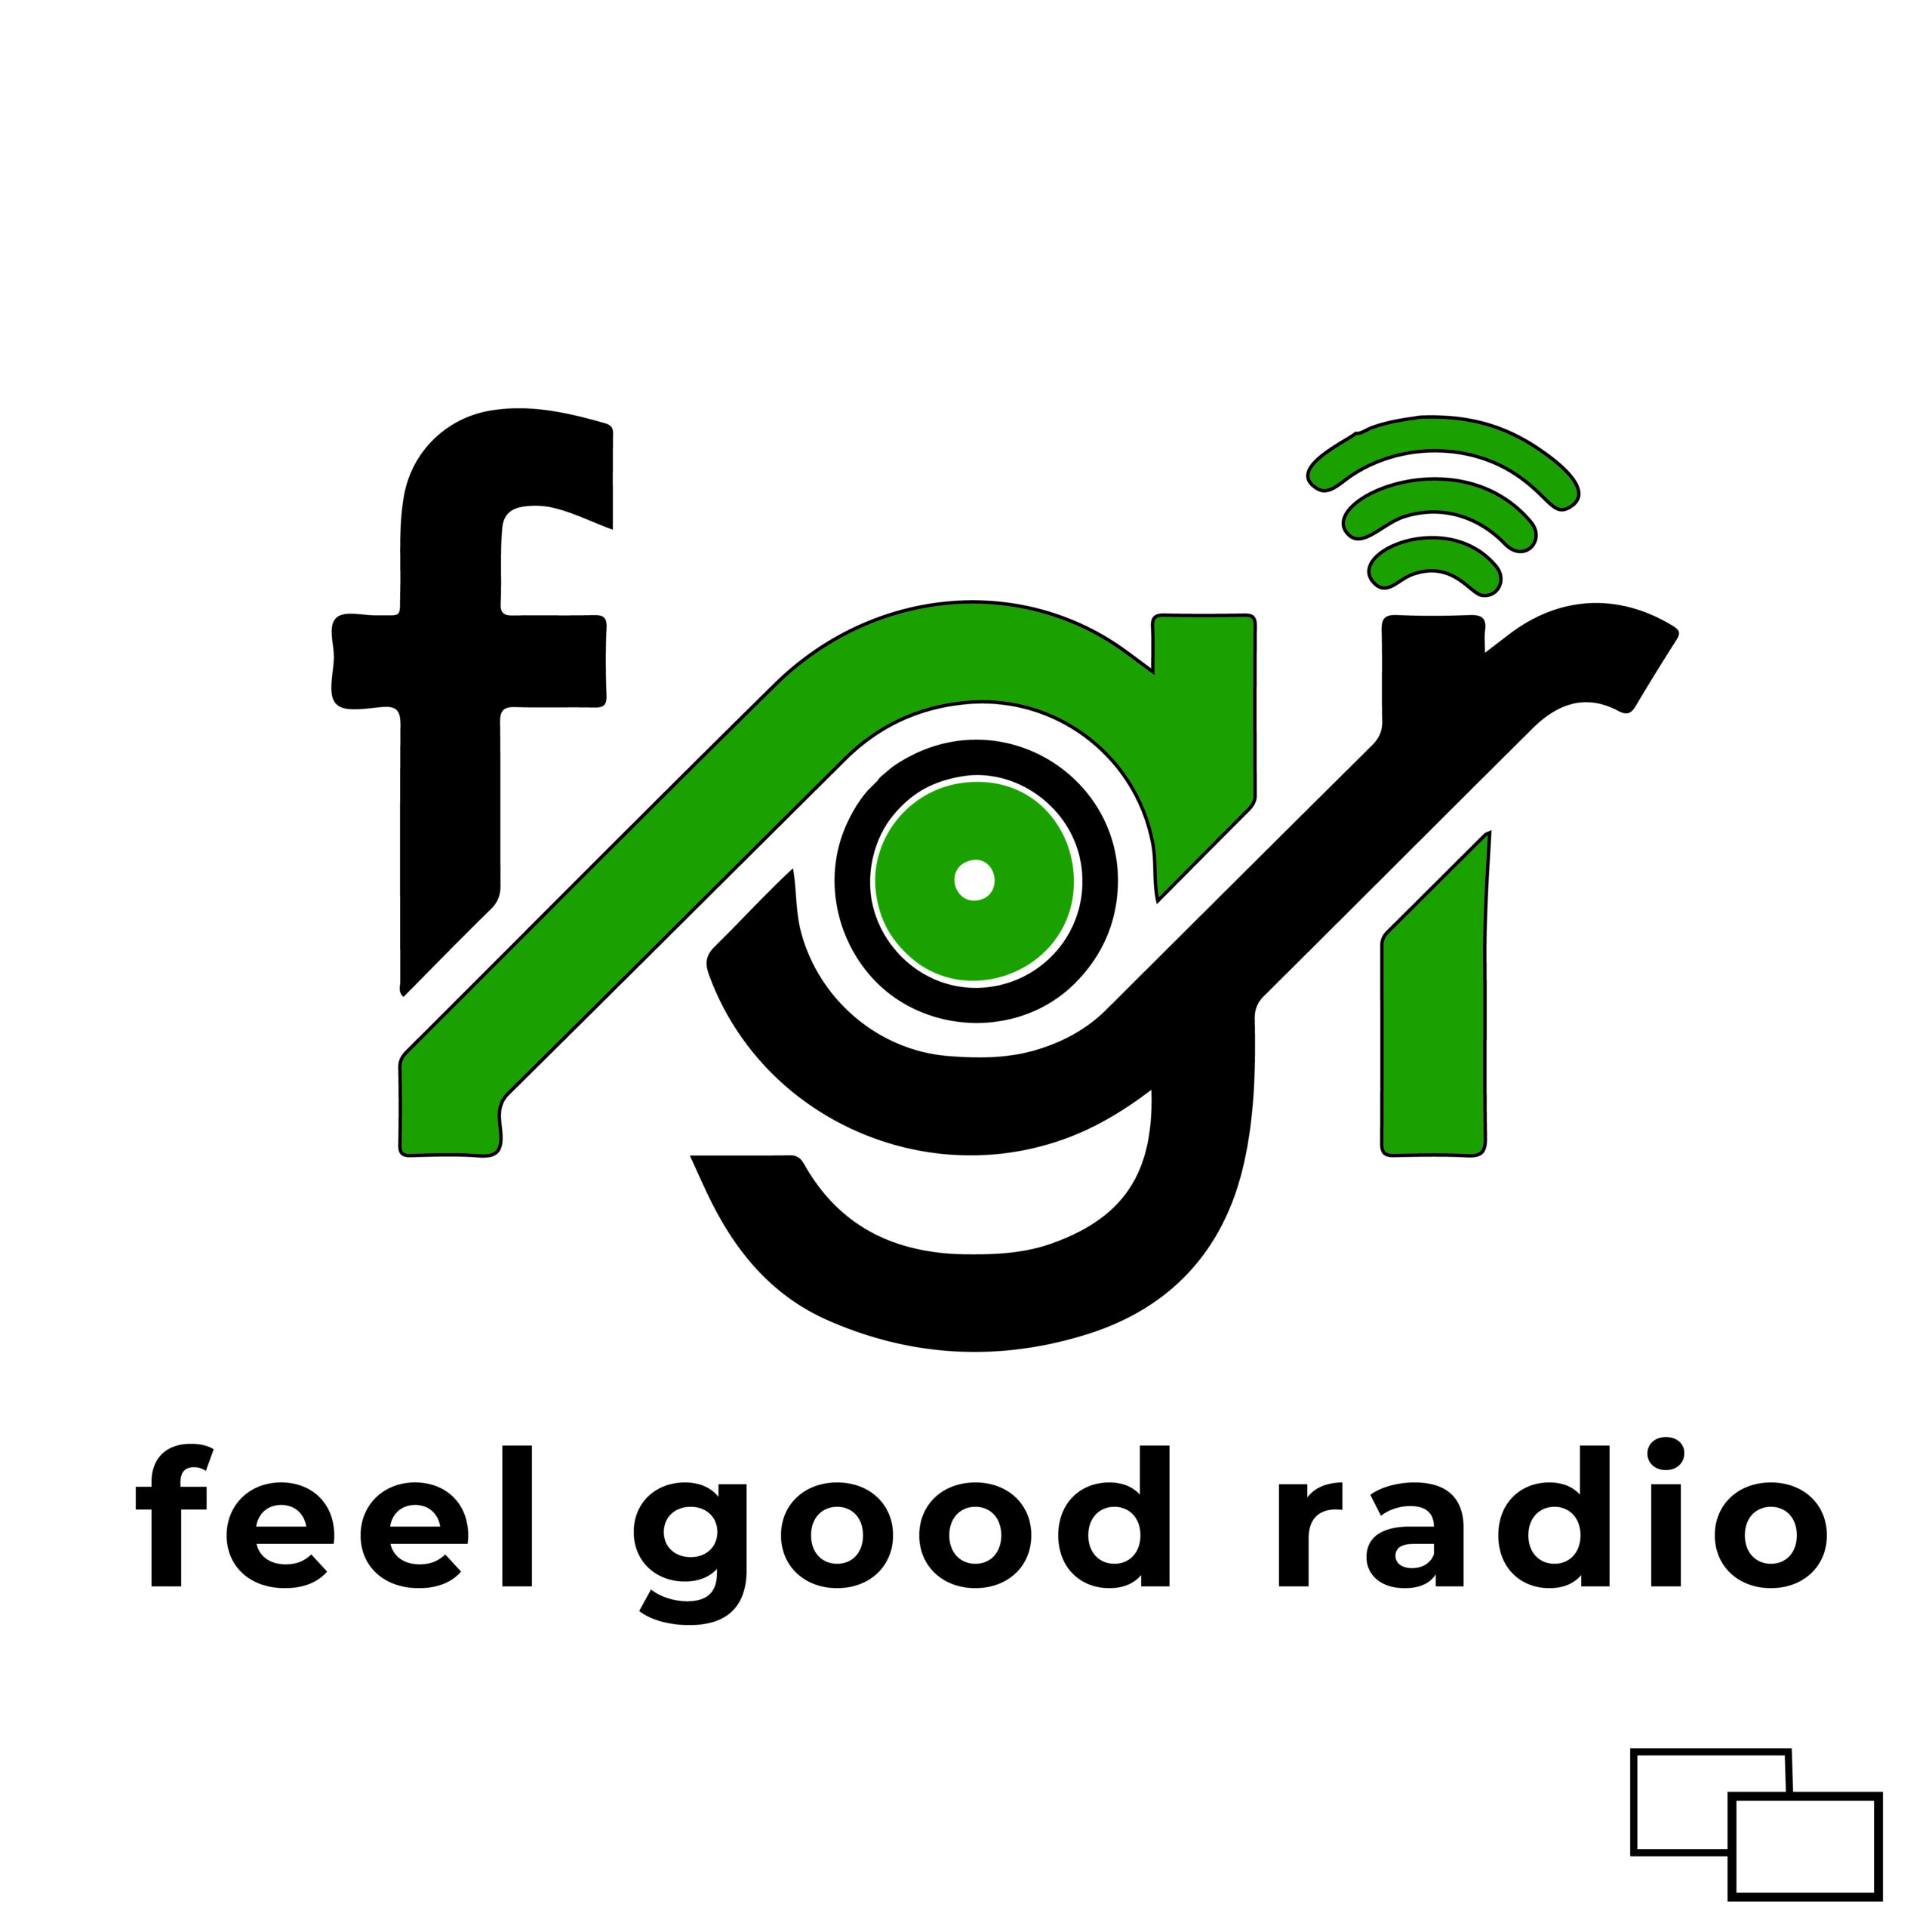 FEEL GOOD RADIO